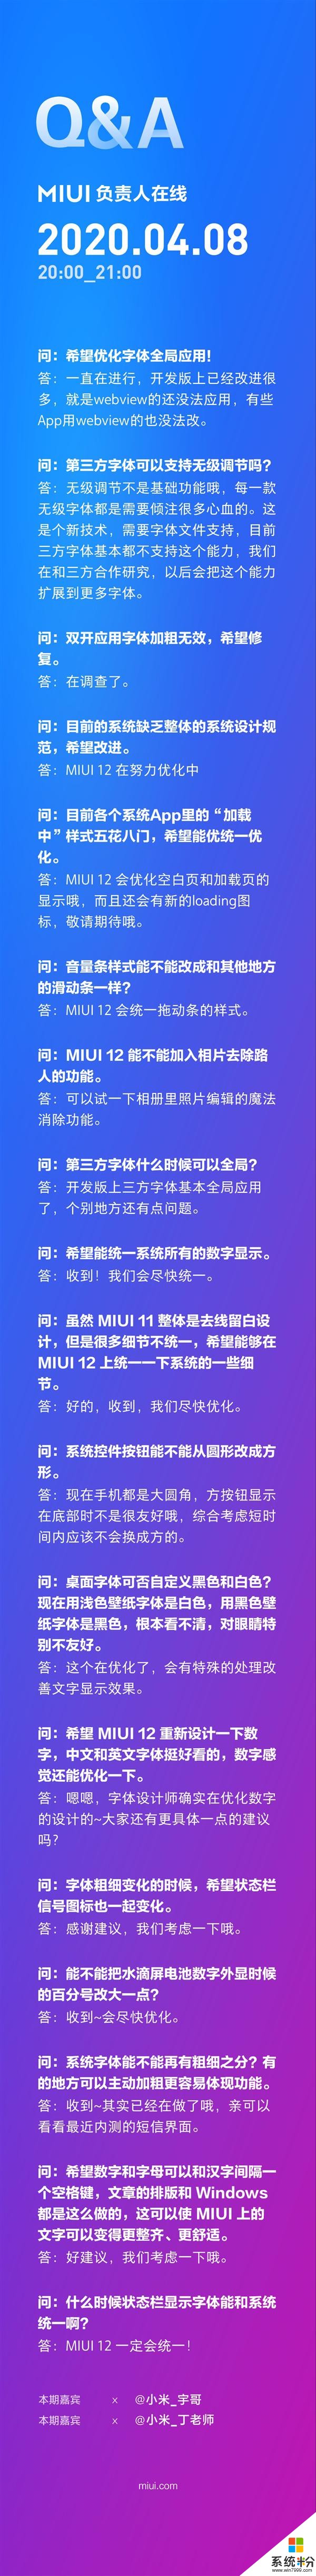 MIUI負責人爆料：MIUI 12狀態欄和係統字體將統一